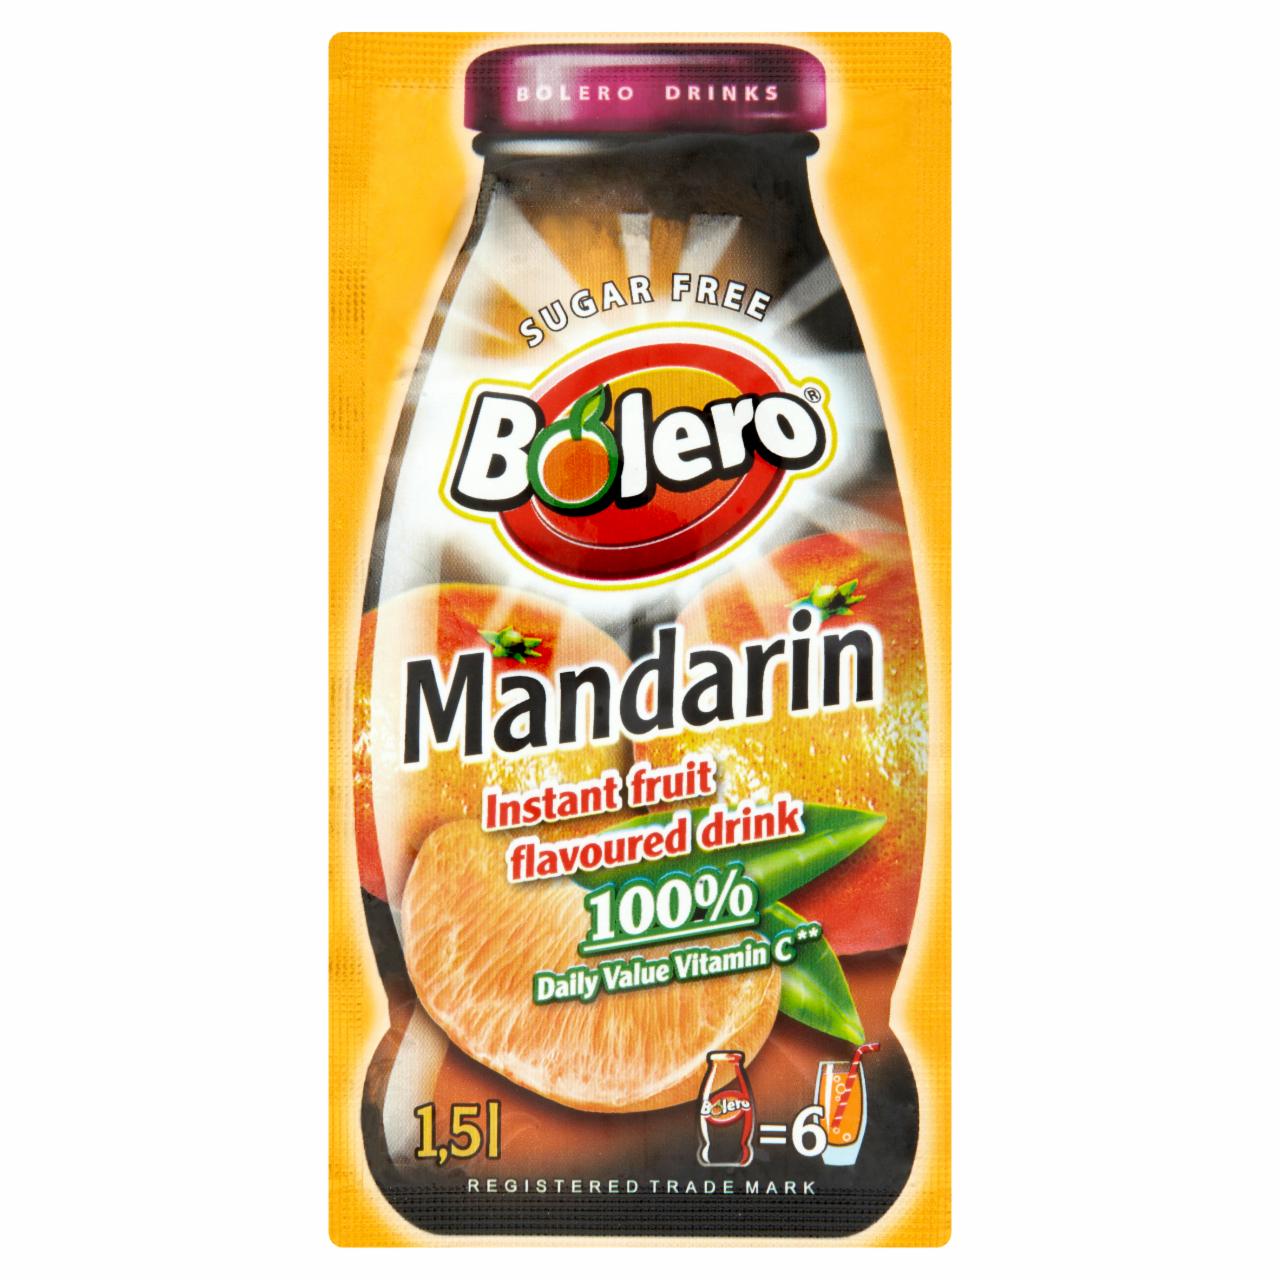 Képek - Bolero mandarin ízesítésű italpor édesítőszerekkel 9 g